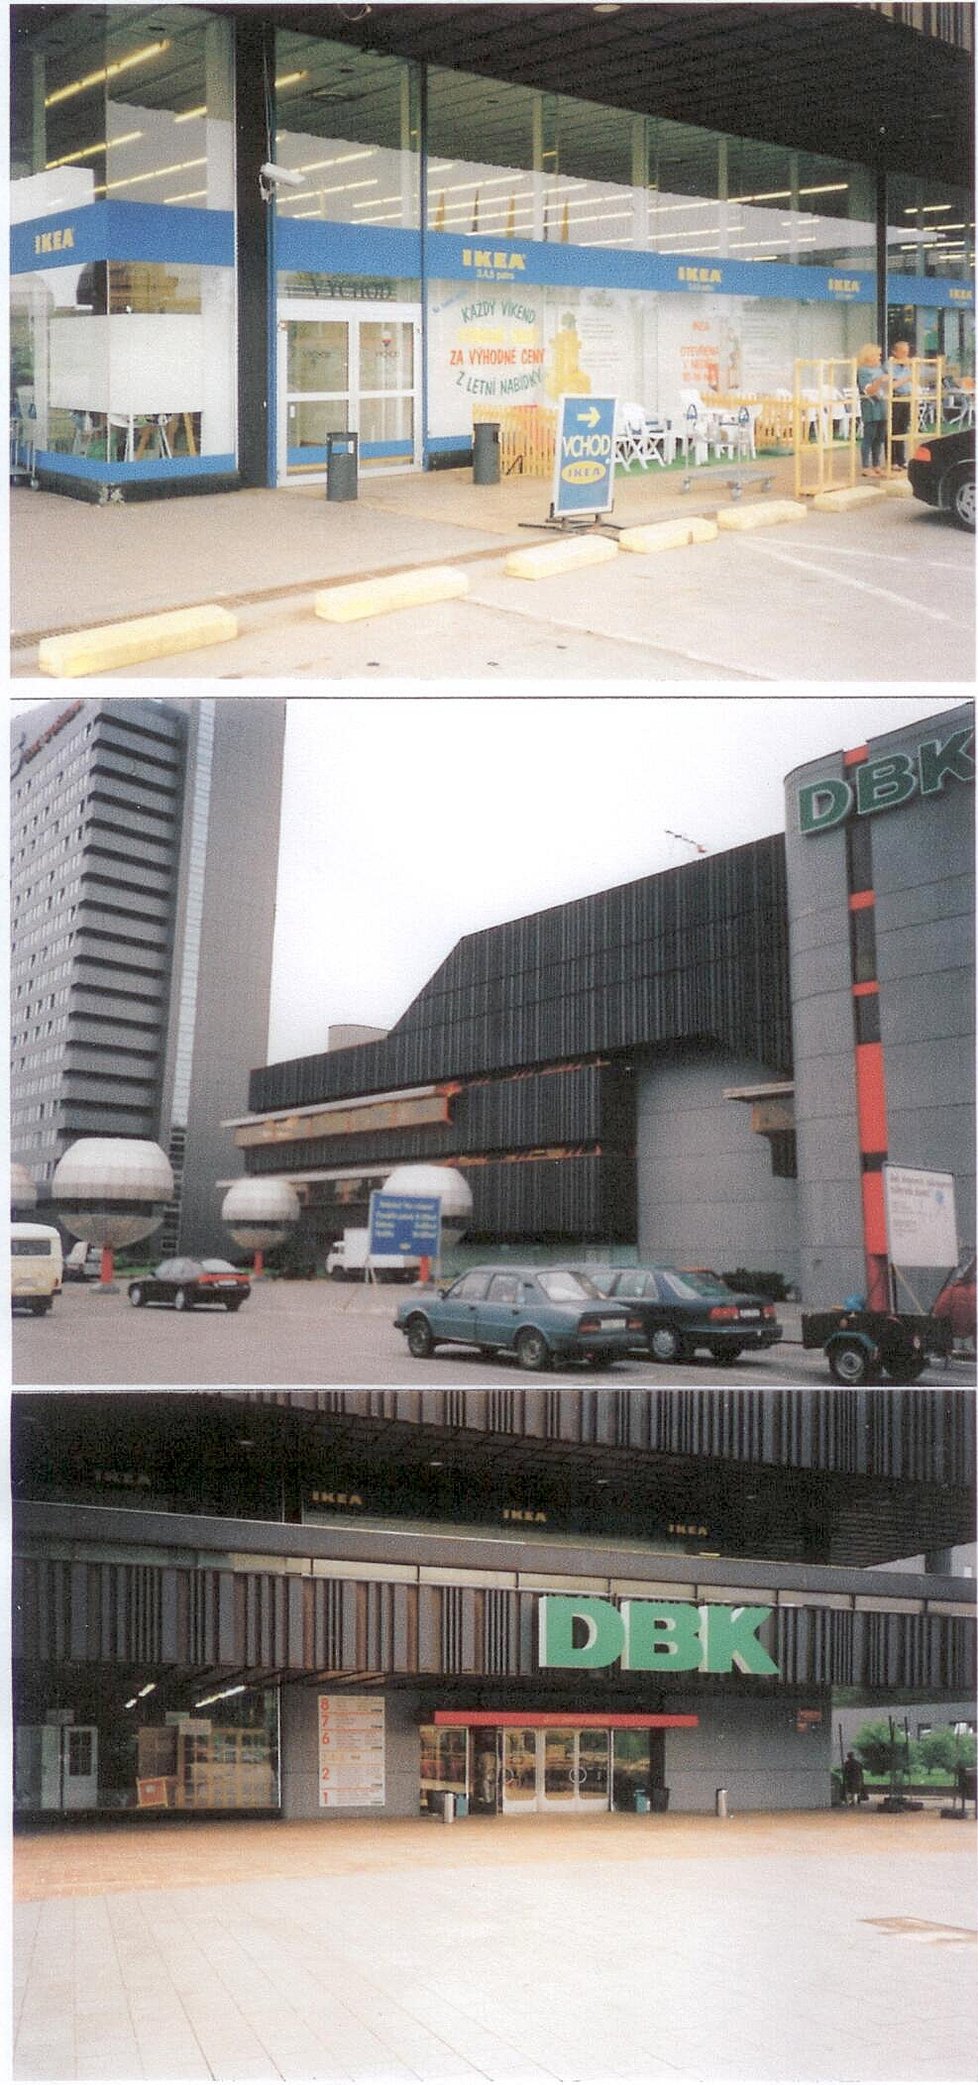 Trojice dobových snímků DBK, který vyobrazuje i existenci IKEA na tomto místě.